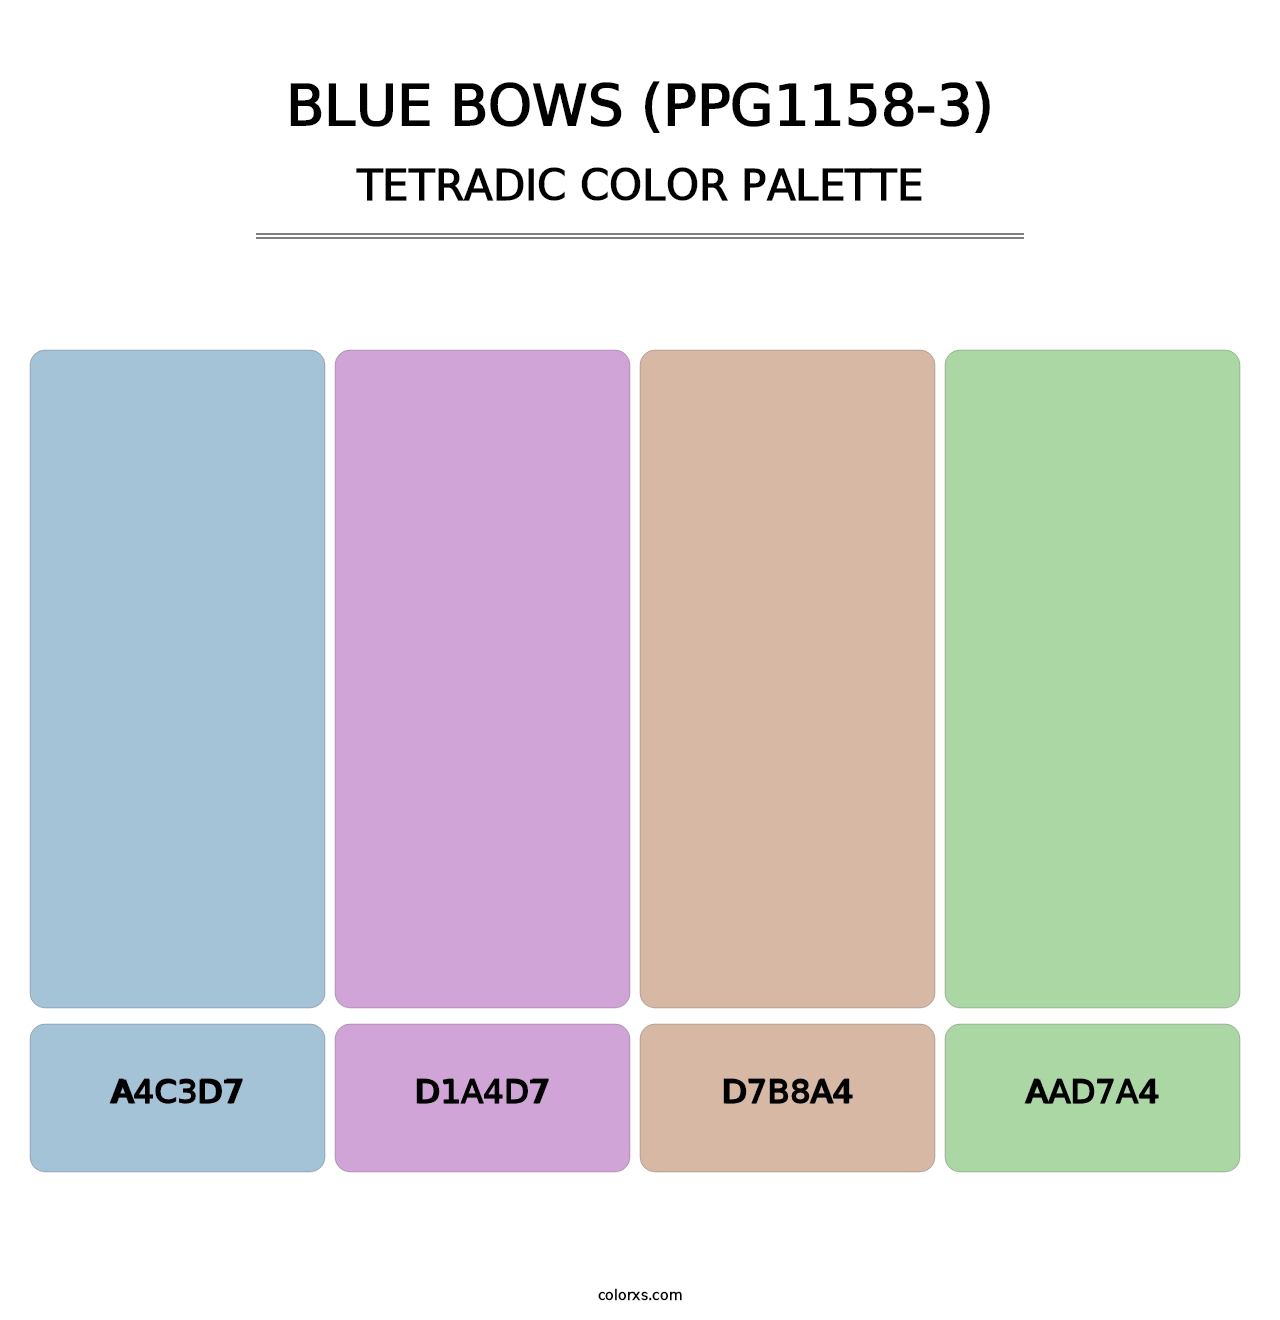 Blue Bows (PPG1158-3) - Tetradic Color Palette